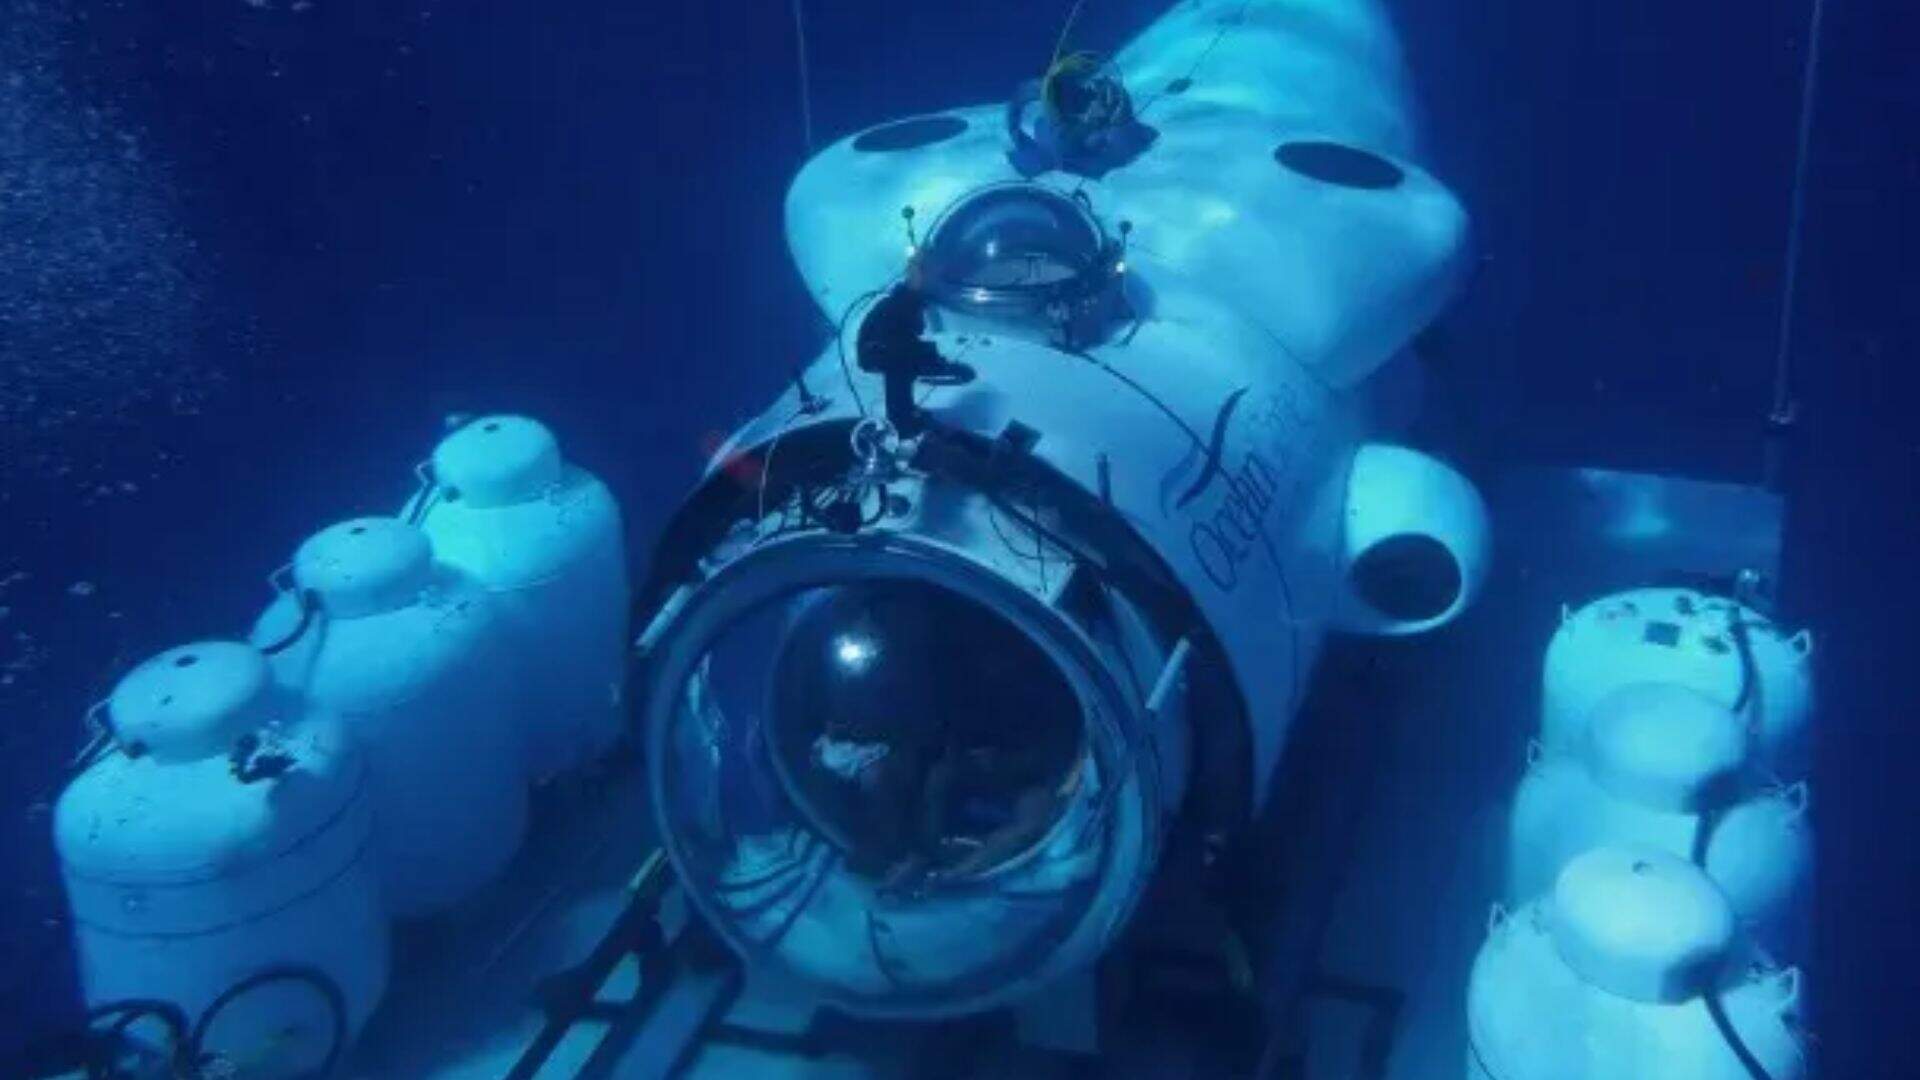 Novas viagens de submarino: ‘OceanGate’ divulga anúncio chocante após tragédia e revolta população - Metropolitana FM